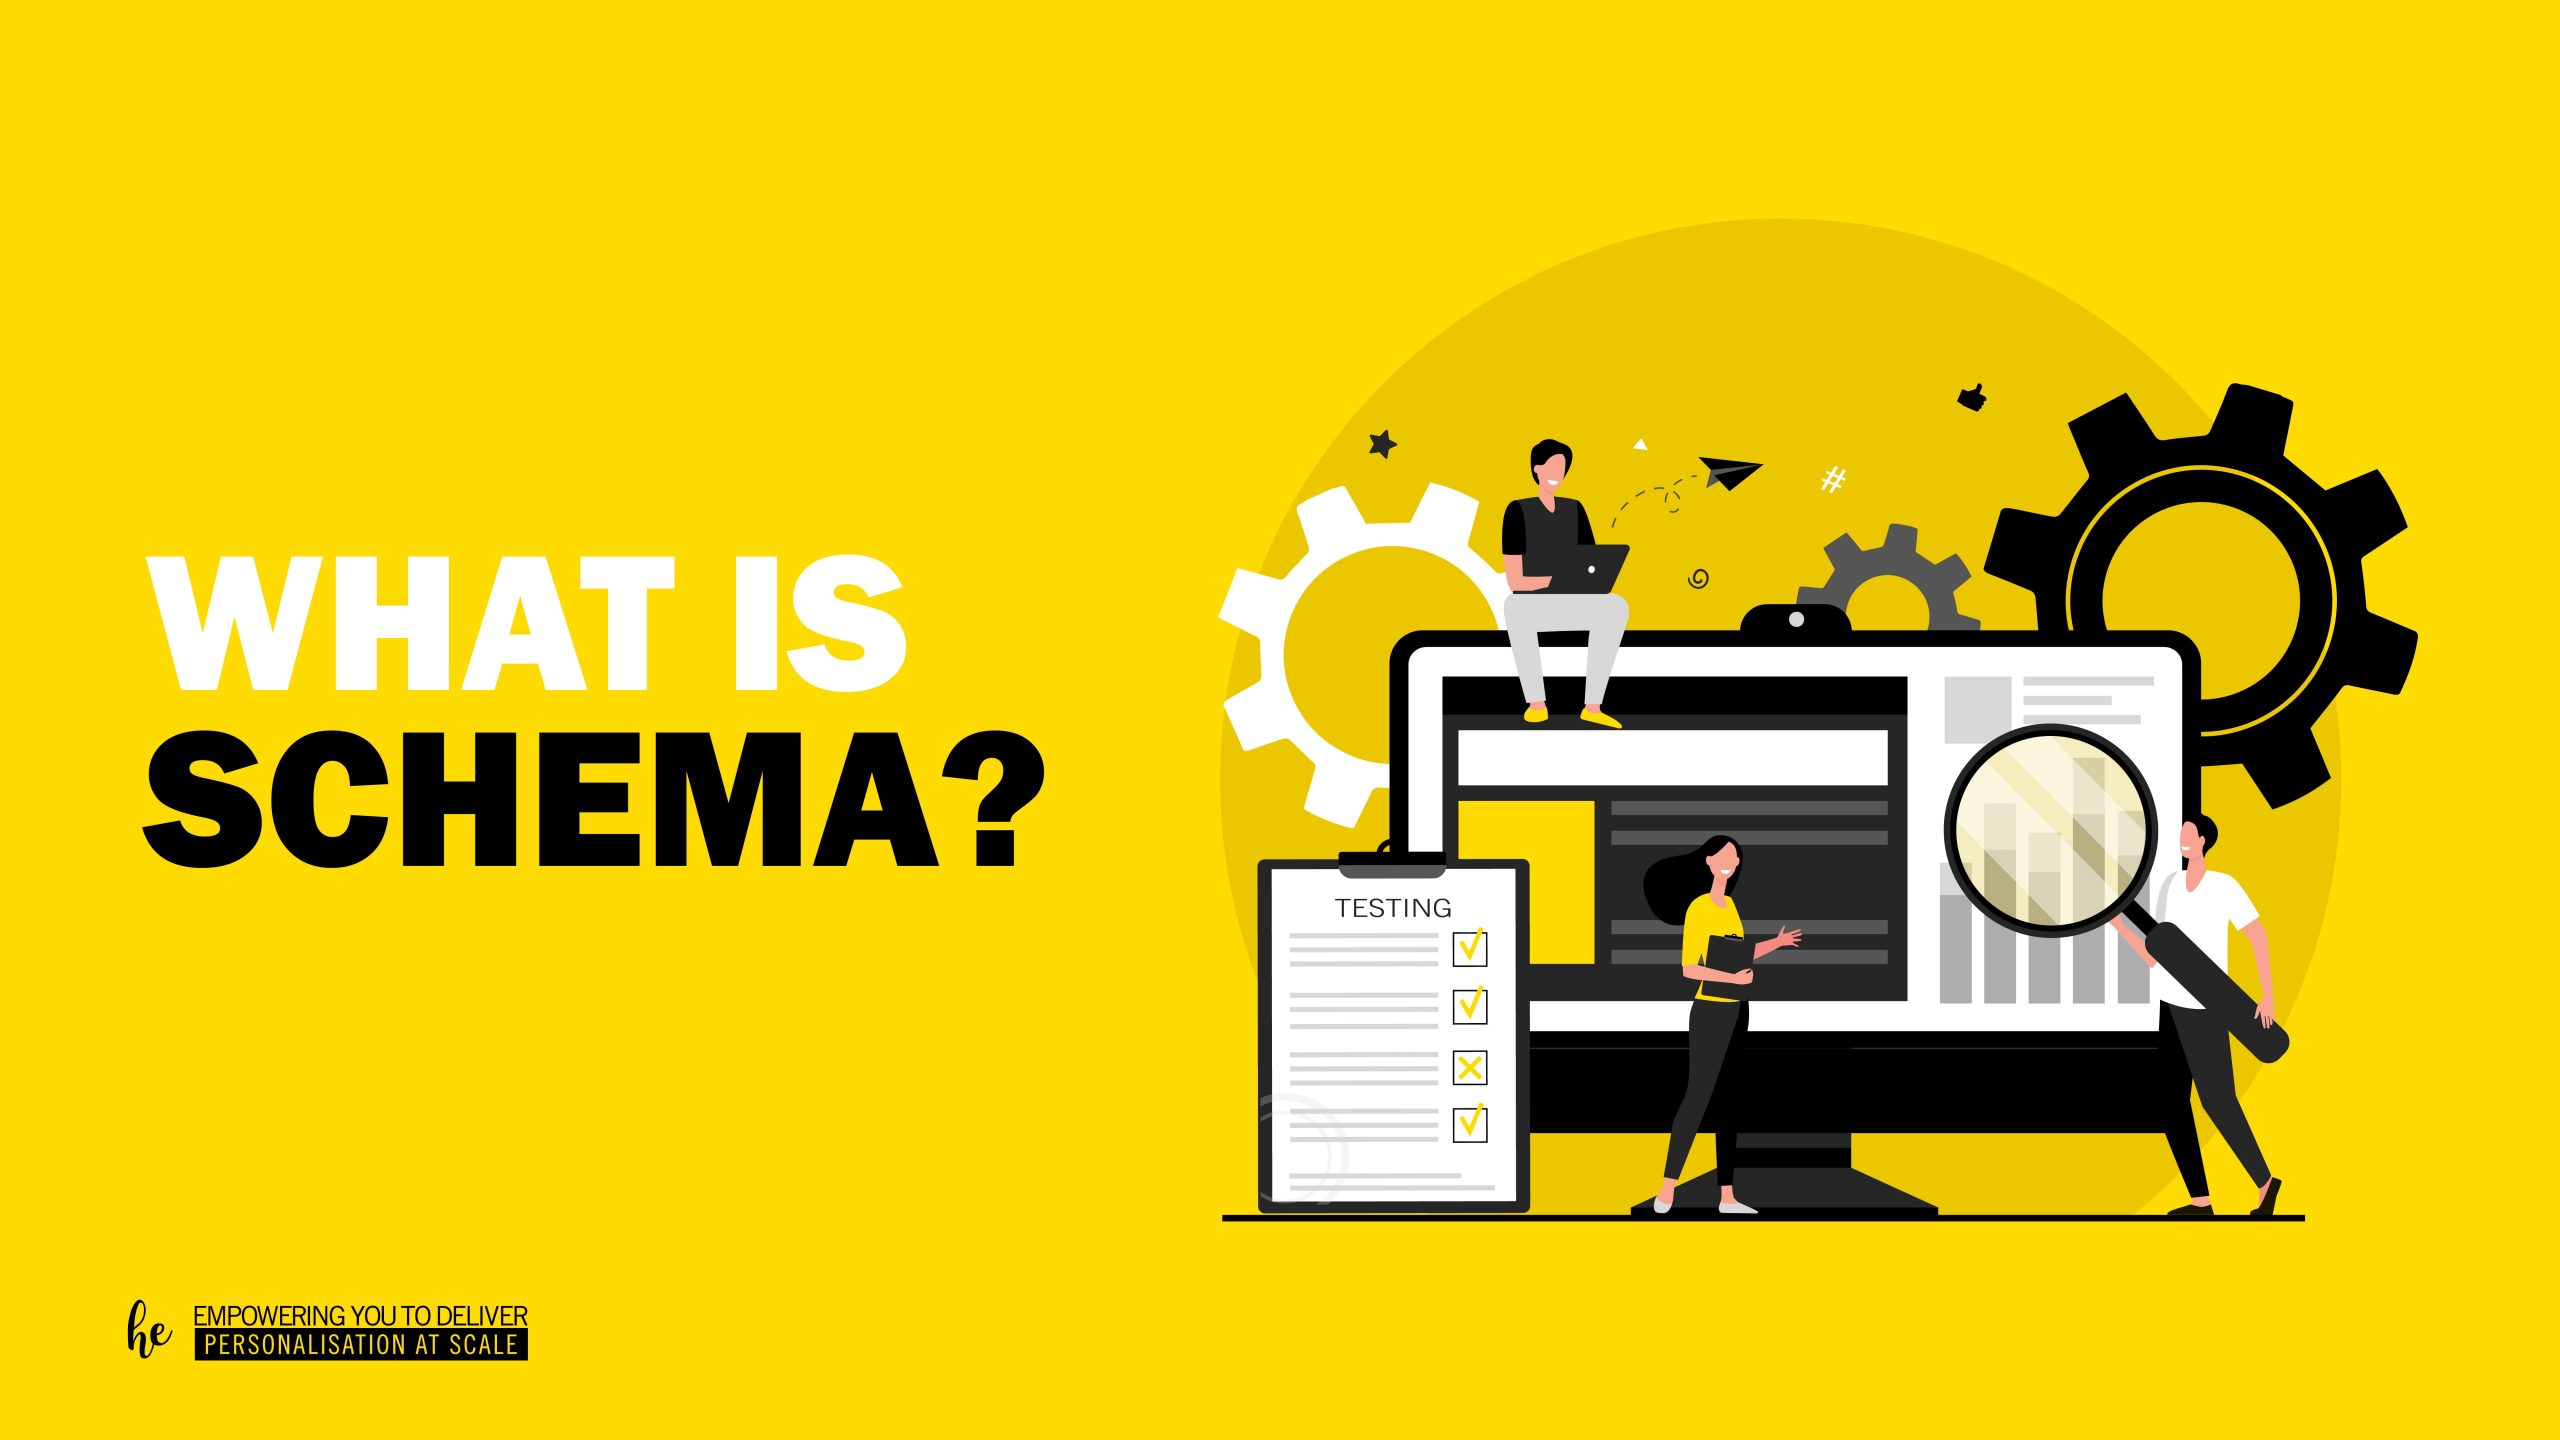 What is schema?